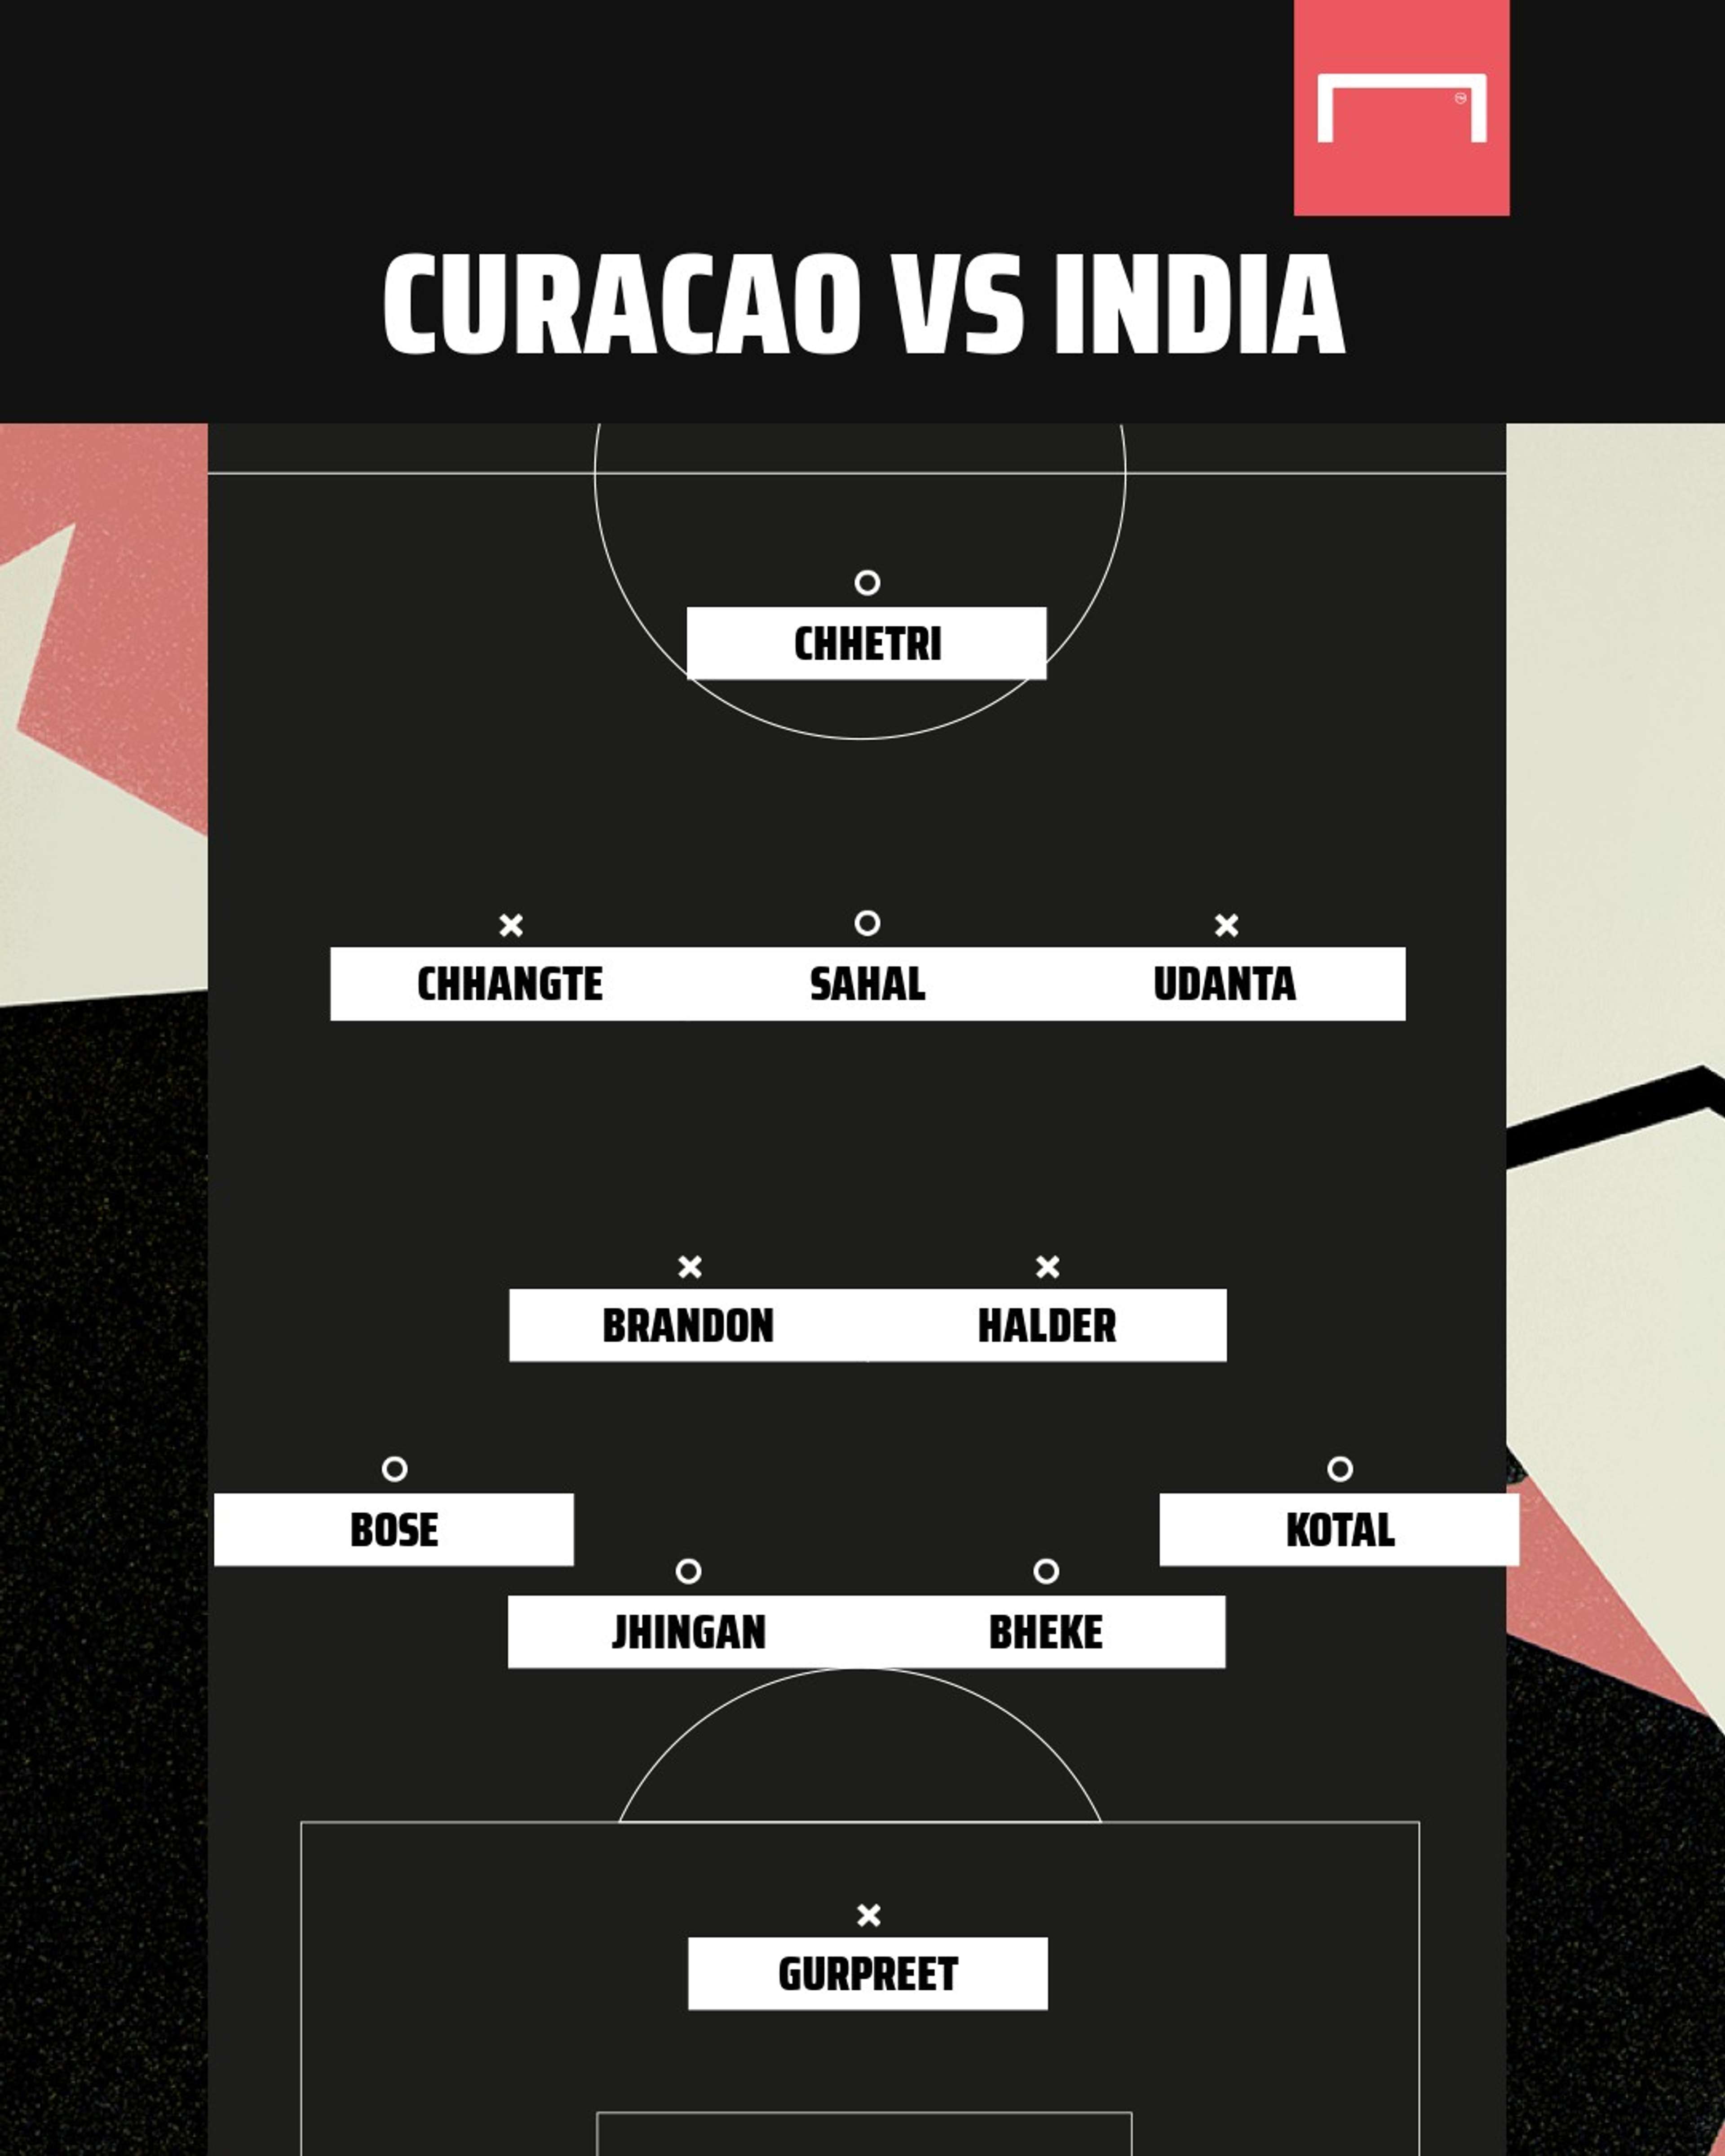 Curacao vs India